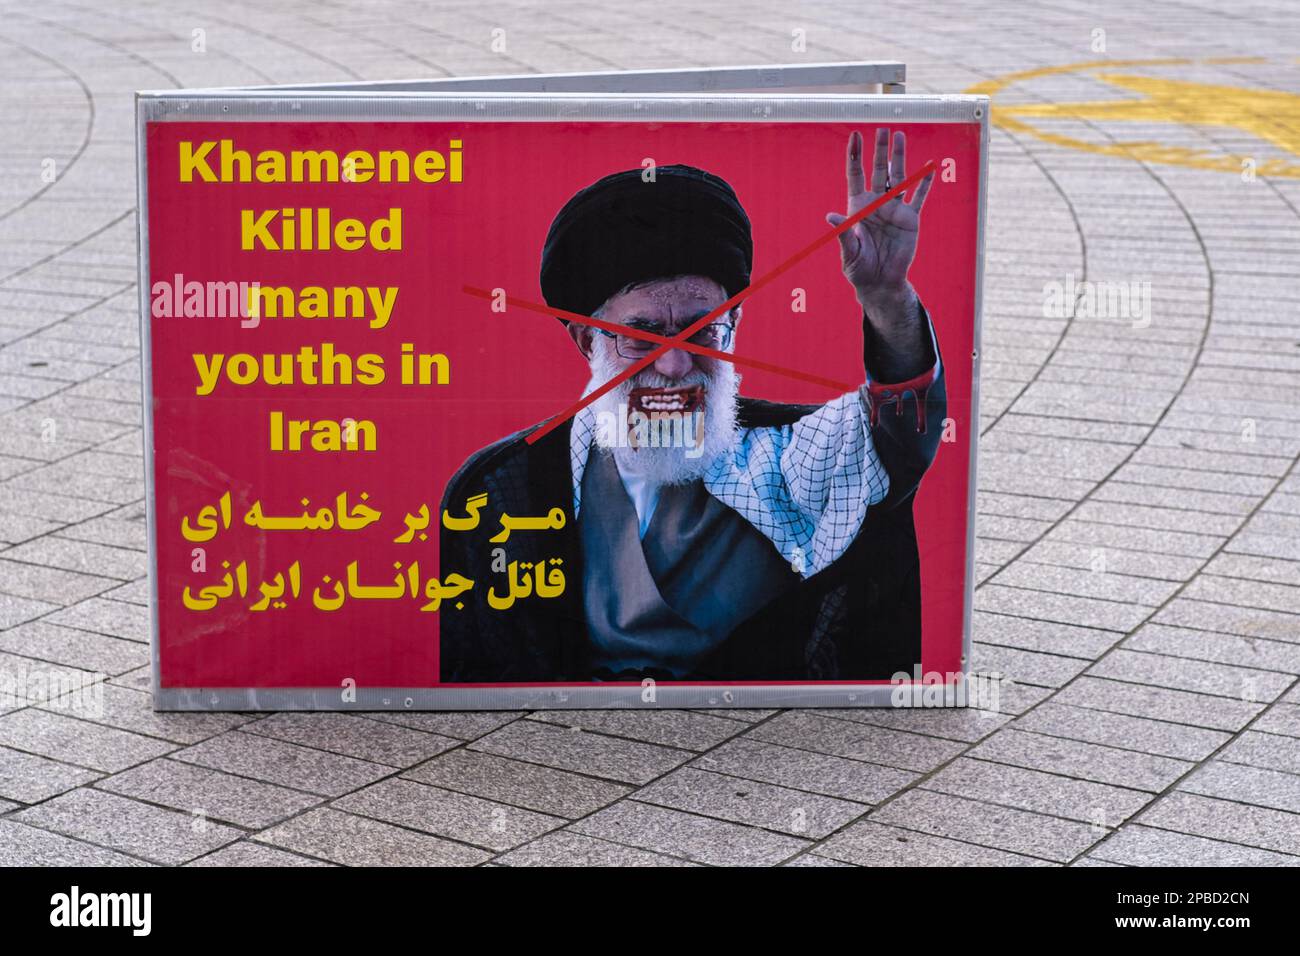 Affiche anti-Khamenei à Trafalgar Square - des militants protestent à Londres contre le régime iranien en raison de leur régime meurtrier. Banque D'Images